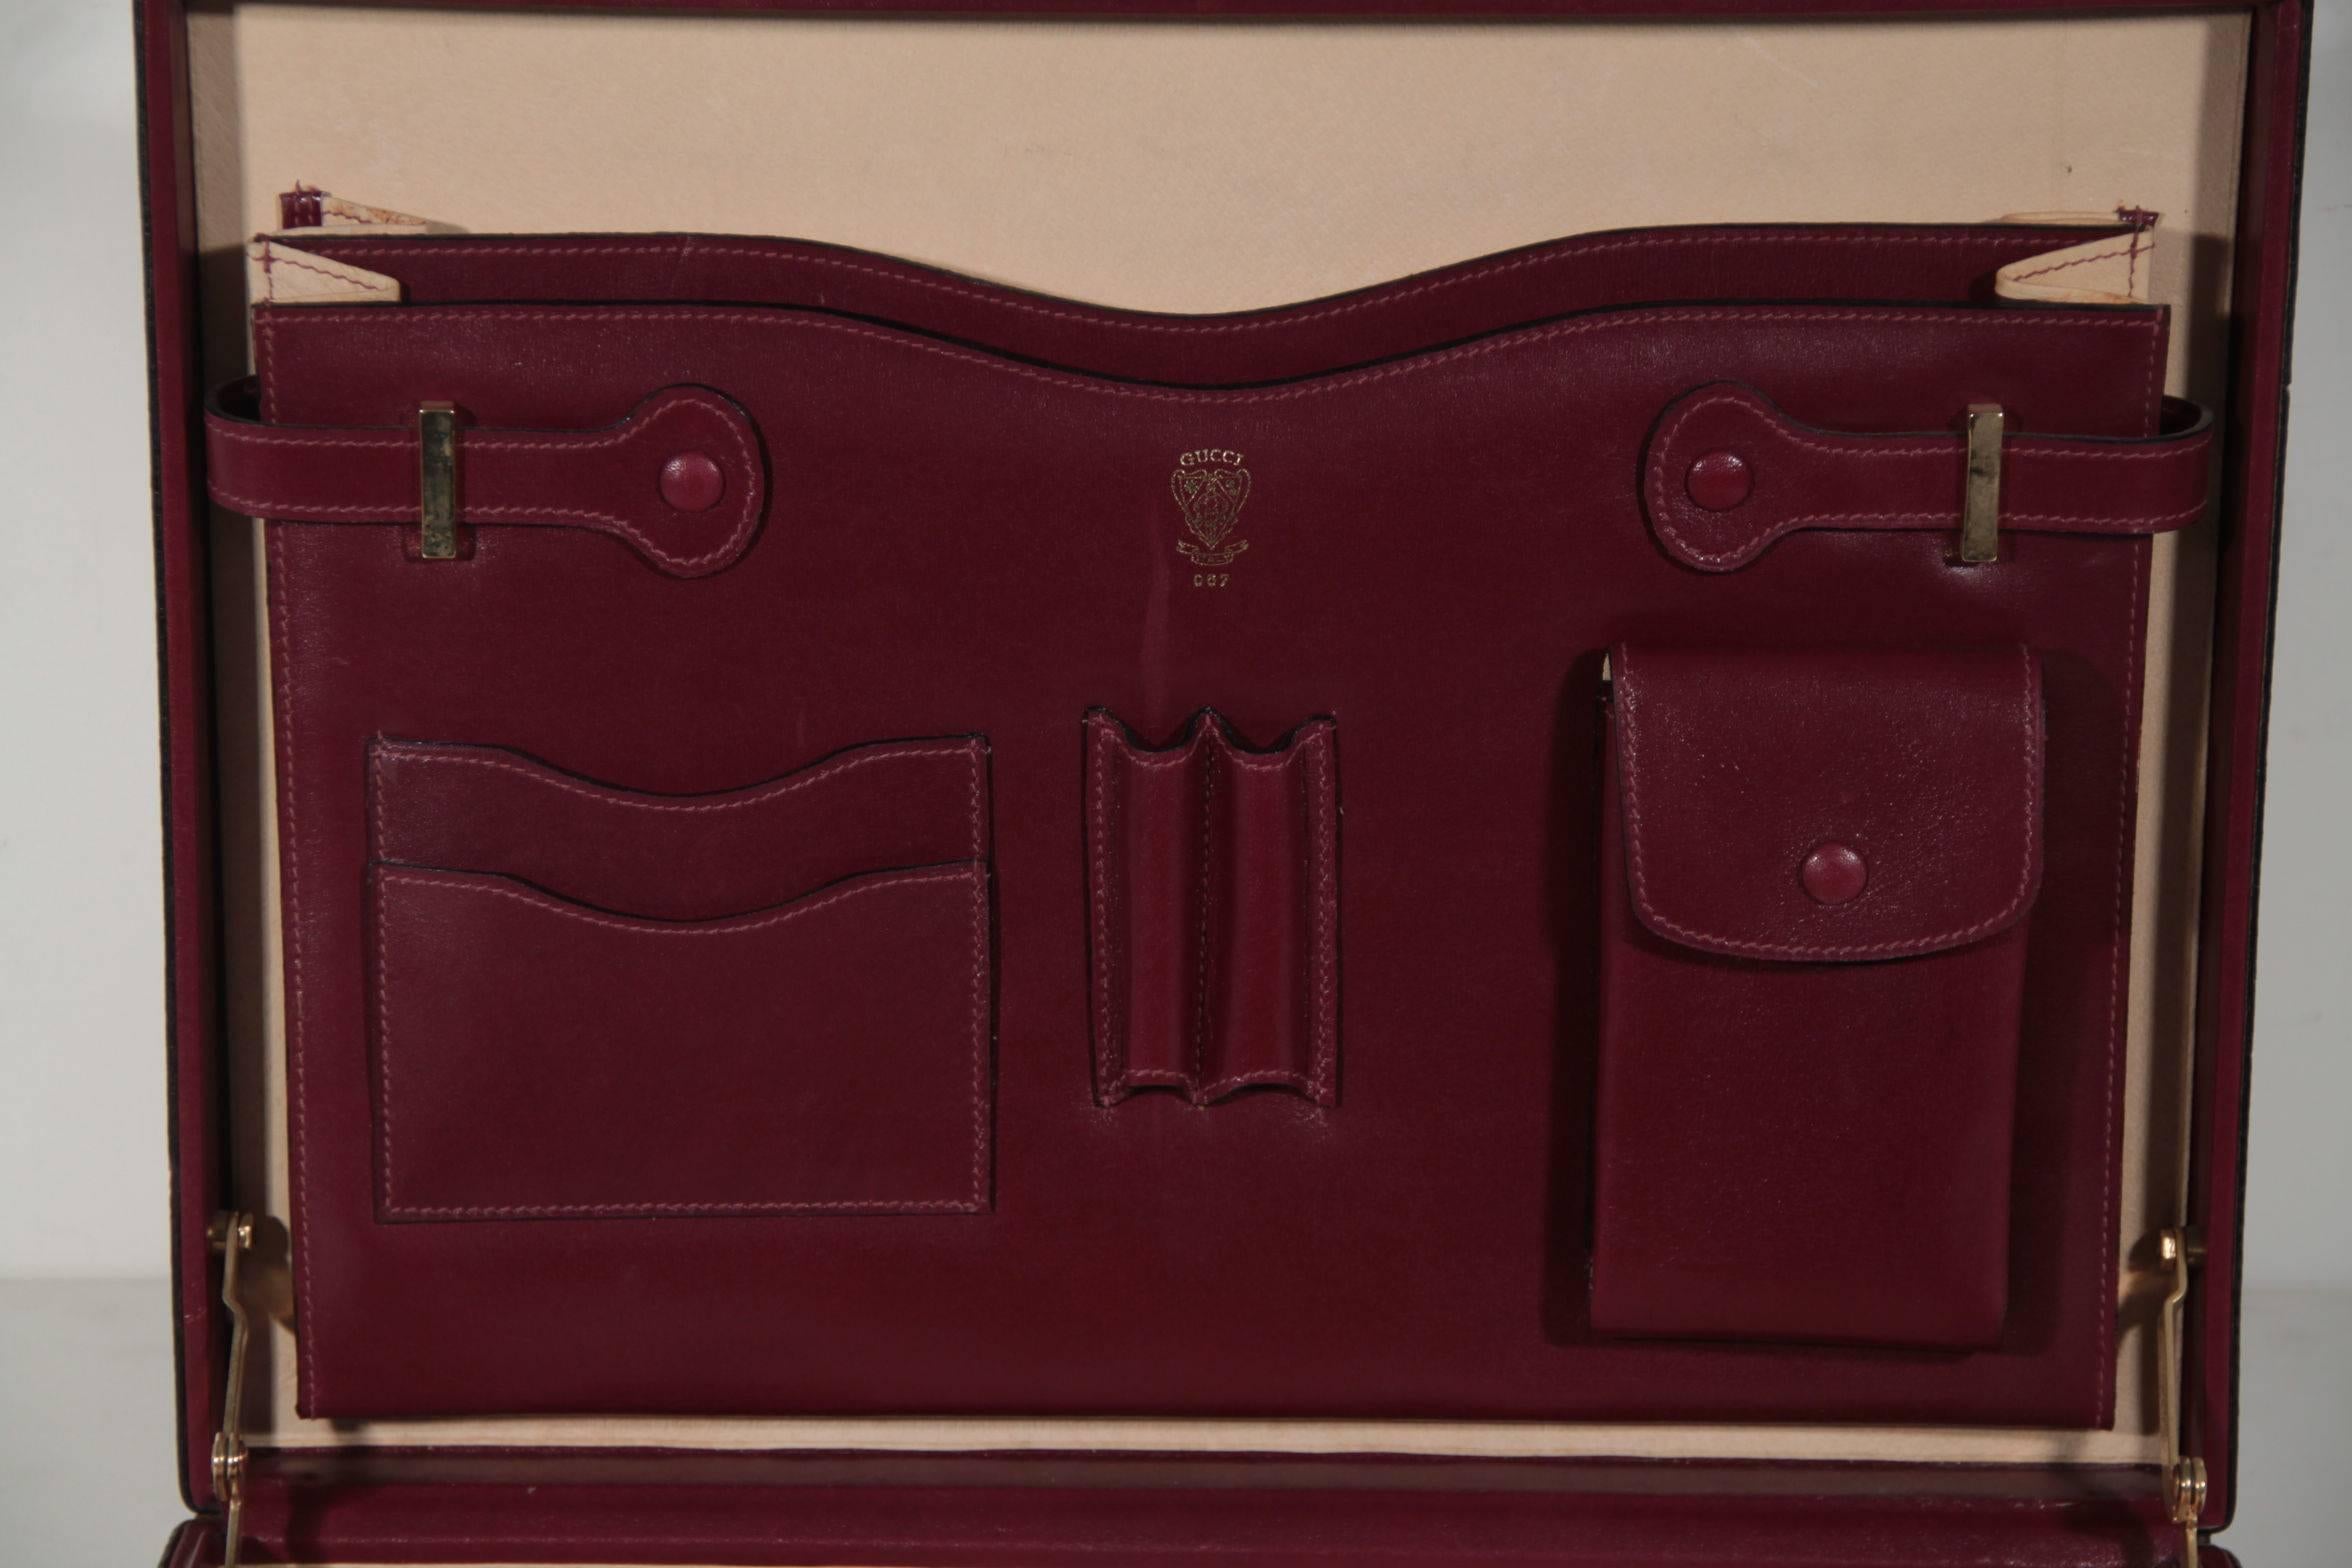 GUCCI VINTAGE Burgundy Leather HARD SIDE BRIEFCASE Work Bag HANDBAG 1